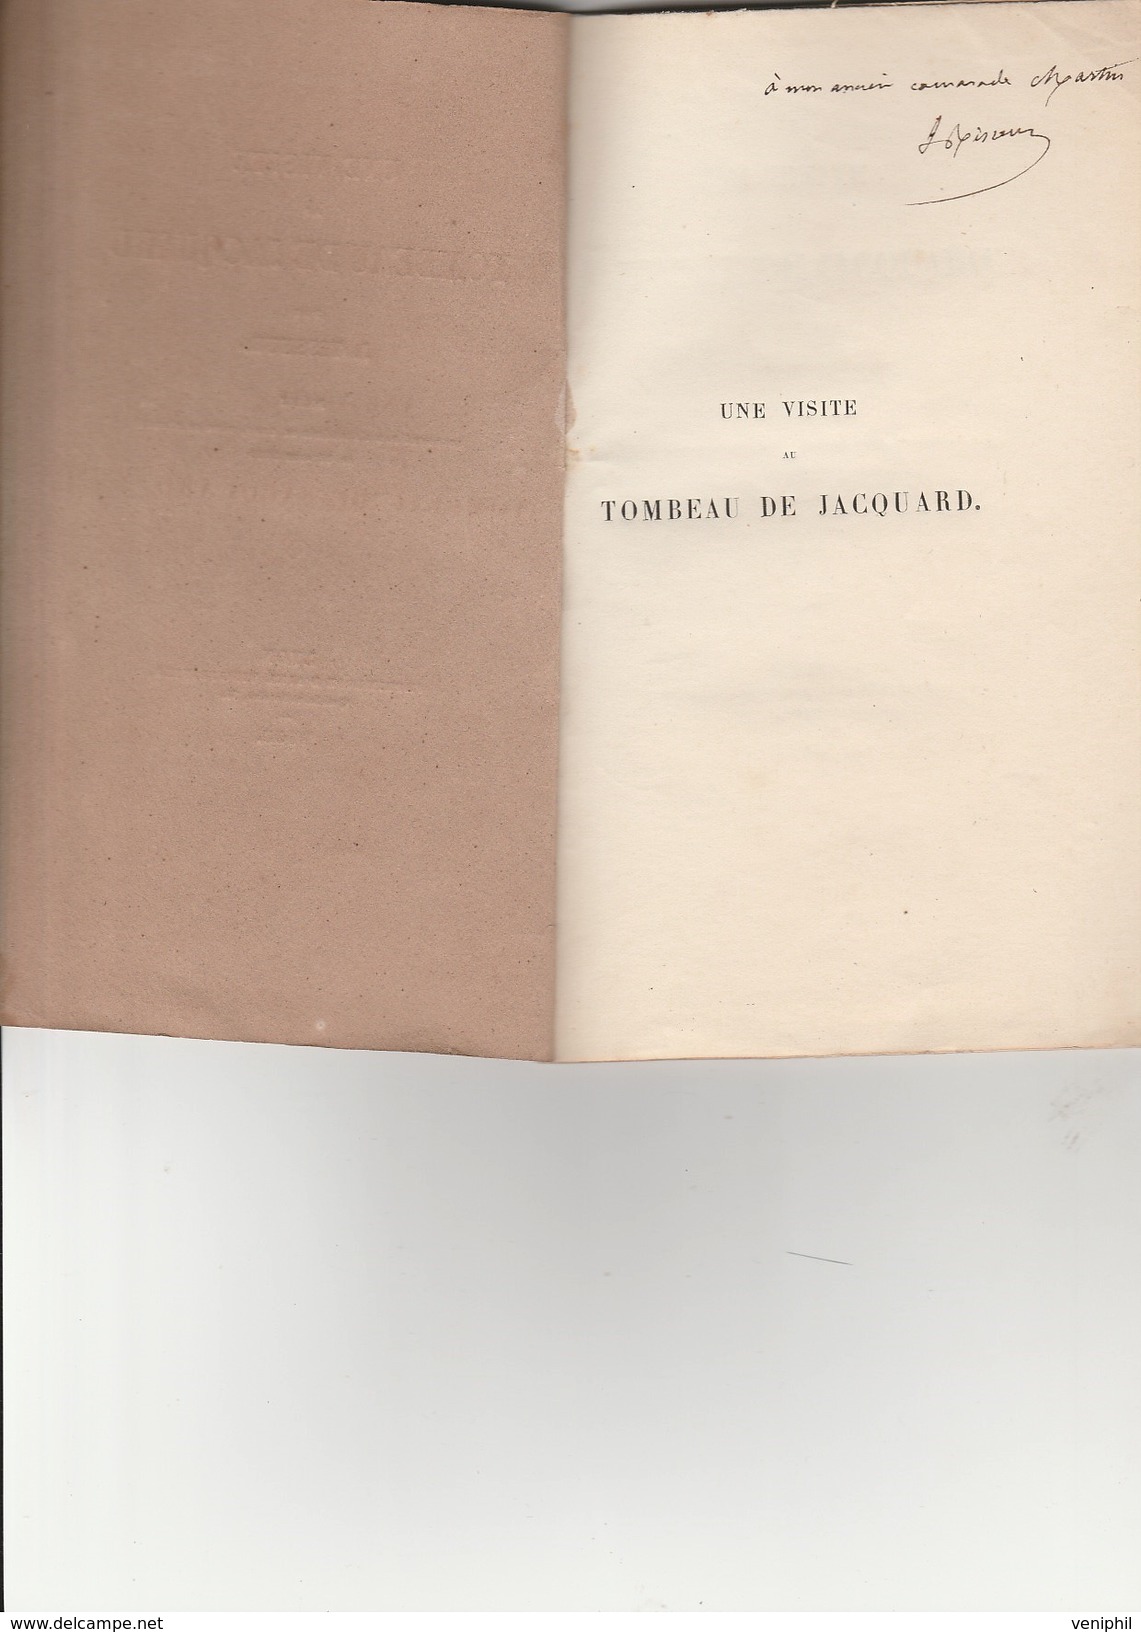 RECUEIL POEME PAR J TISSEUR  AVEC DEDICACE- "UNE VISITE AU TOMBEAU DE JACQUARD " -- 35 Pages -Lyon 1853 - Franse Schrijvers